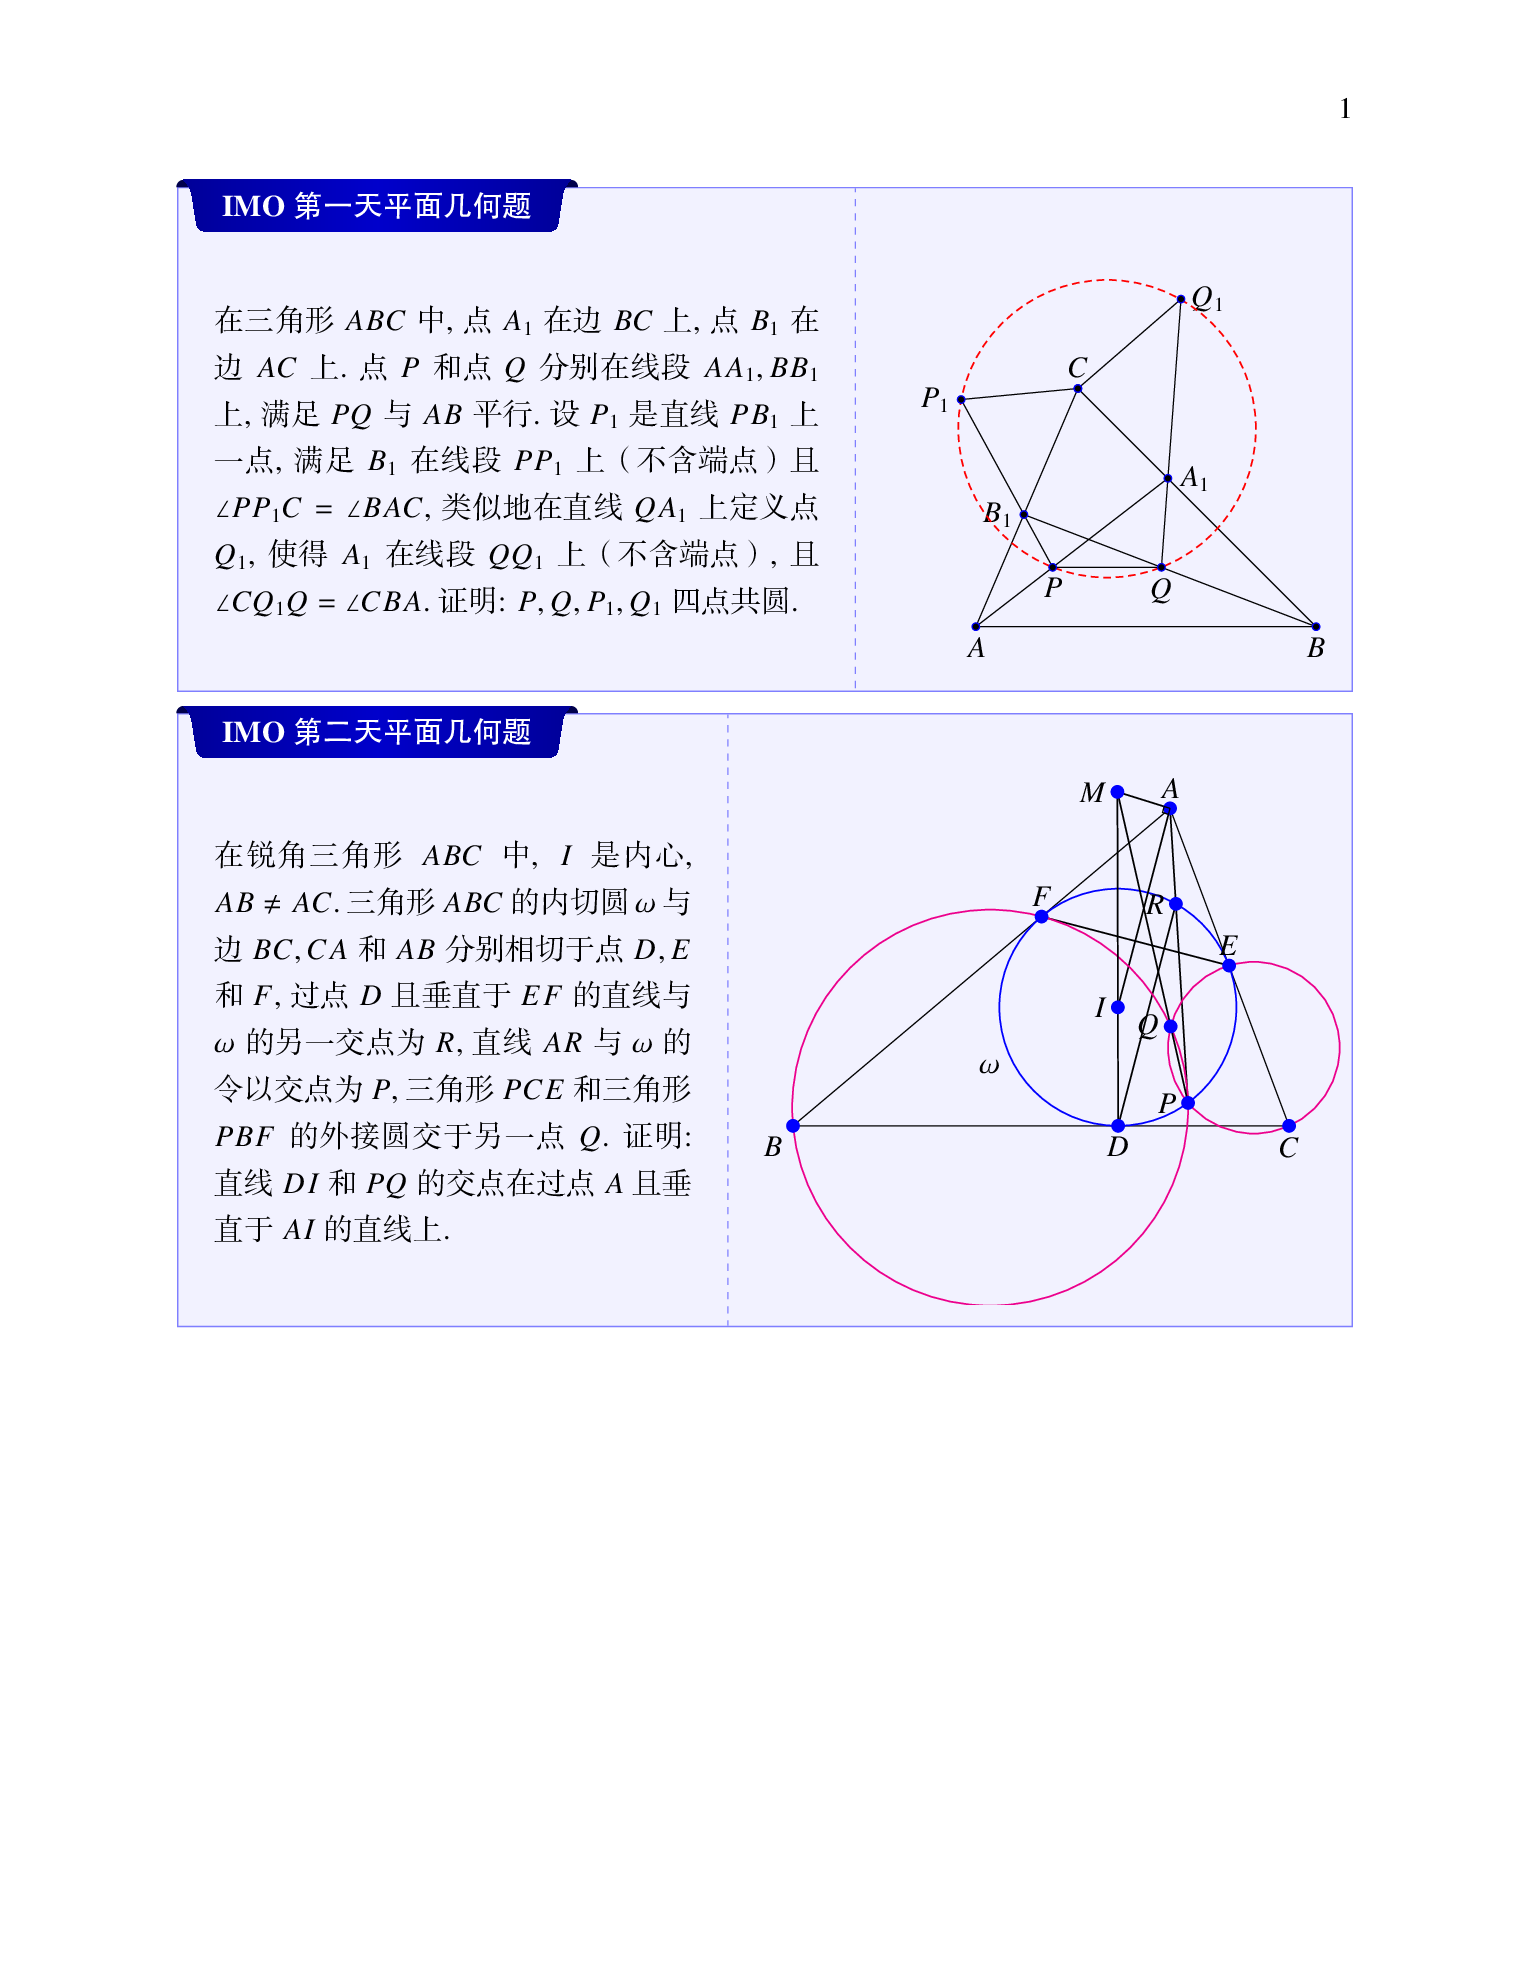 向老师用 tkz-euclide 包绘制平面几何图形